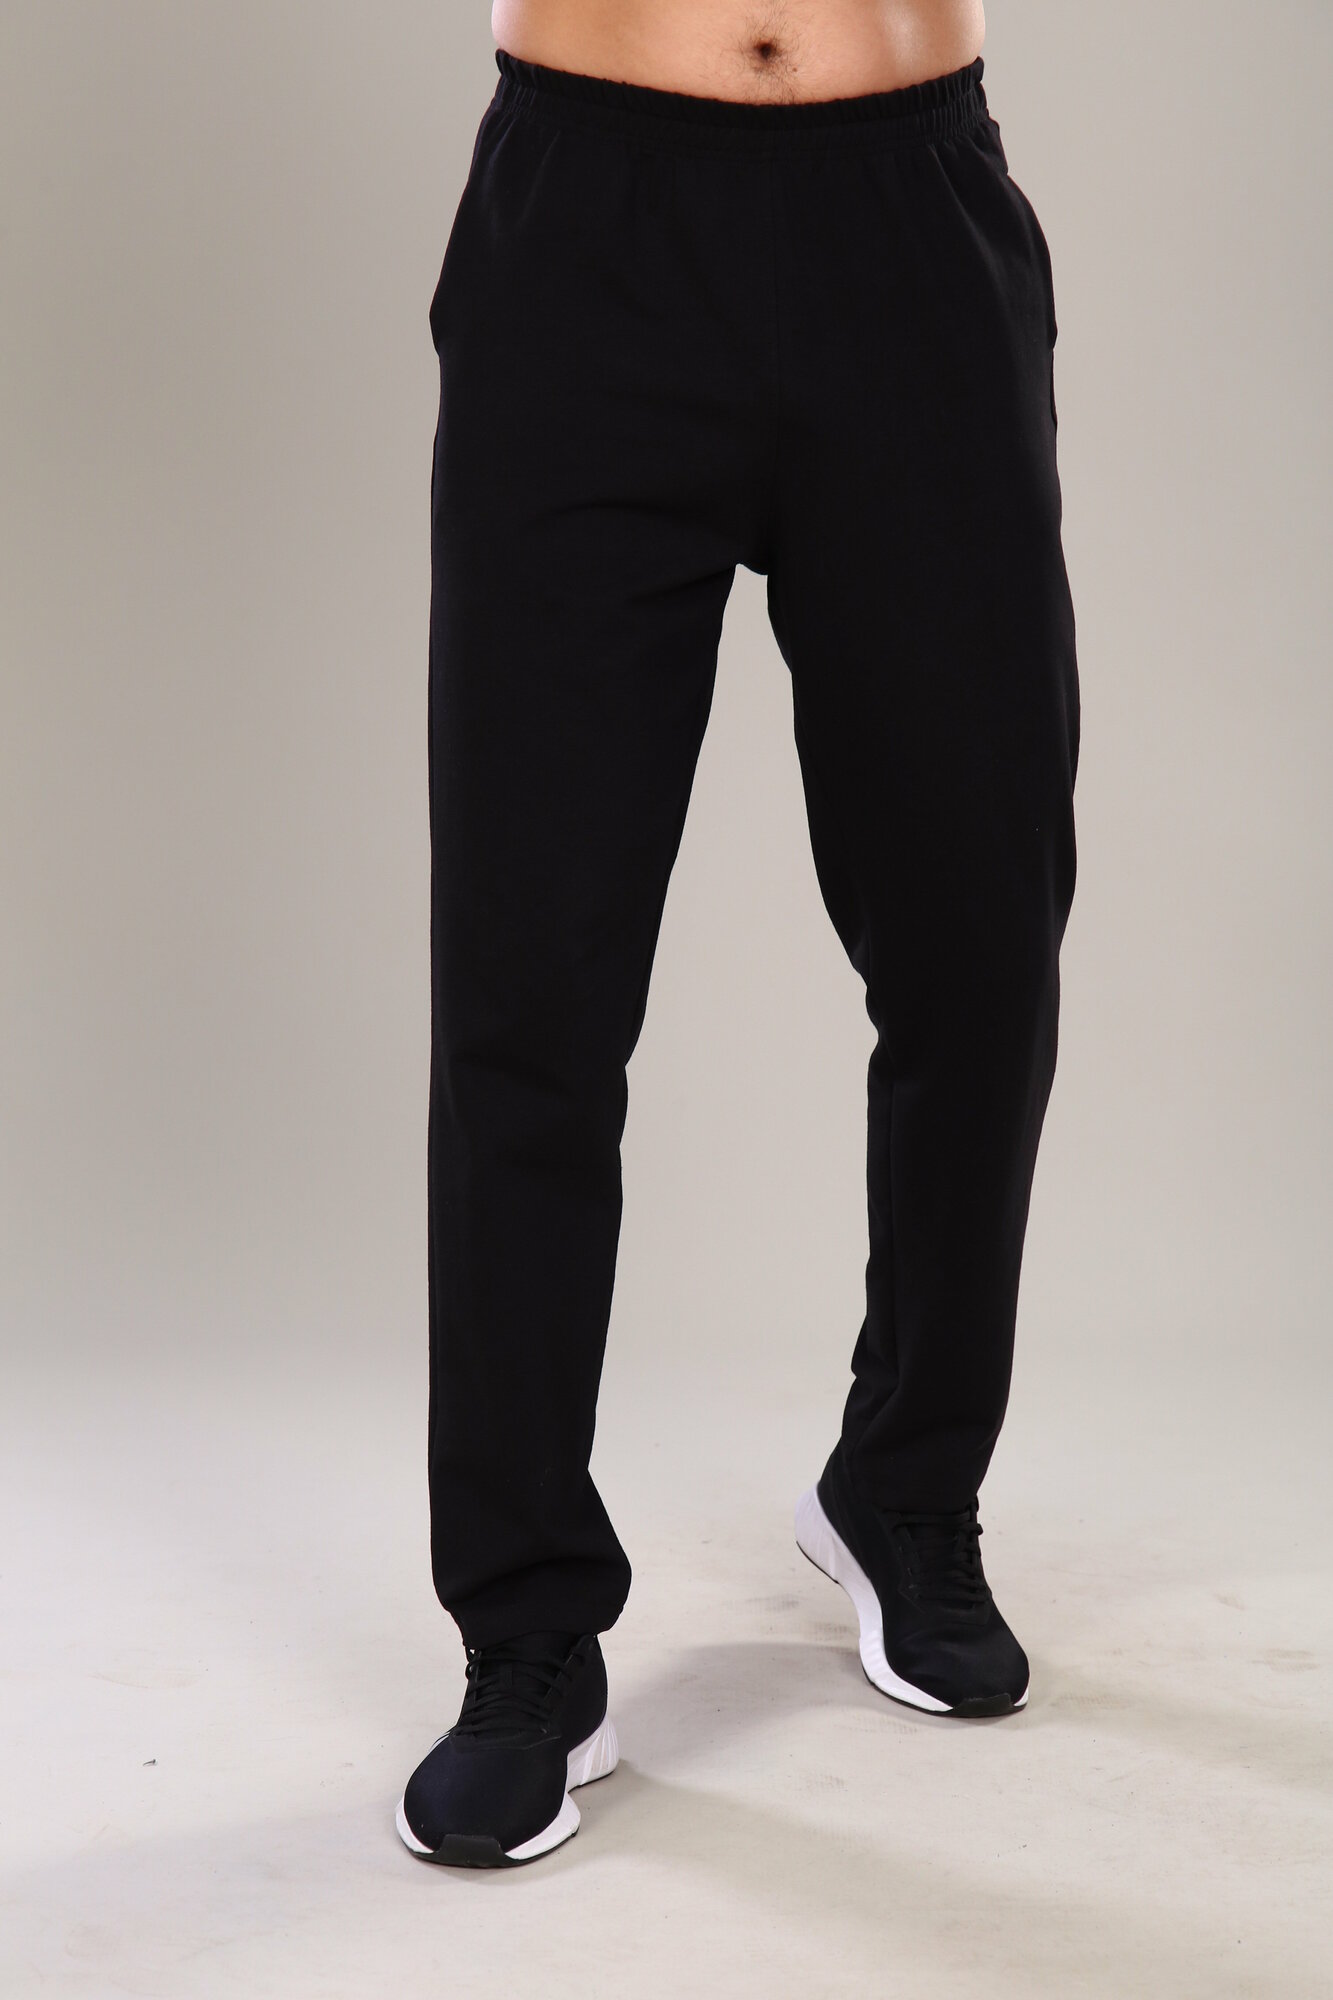 Мужские брюки спортивные больших размеров Люкс петроль IvCapriz